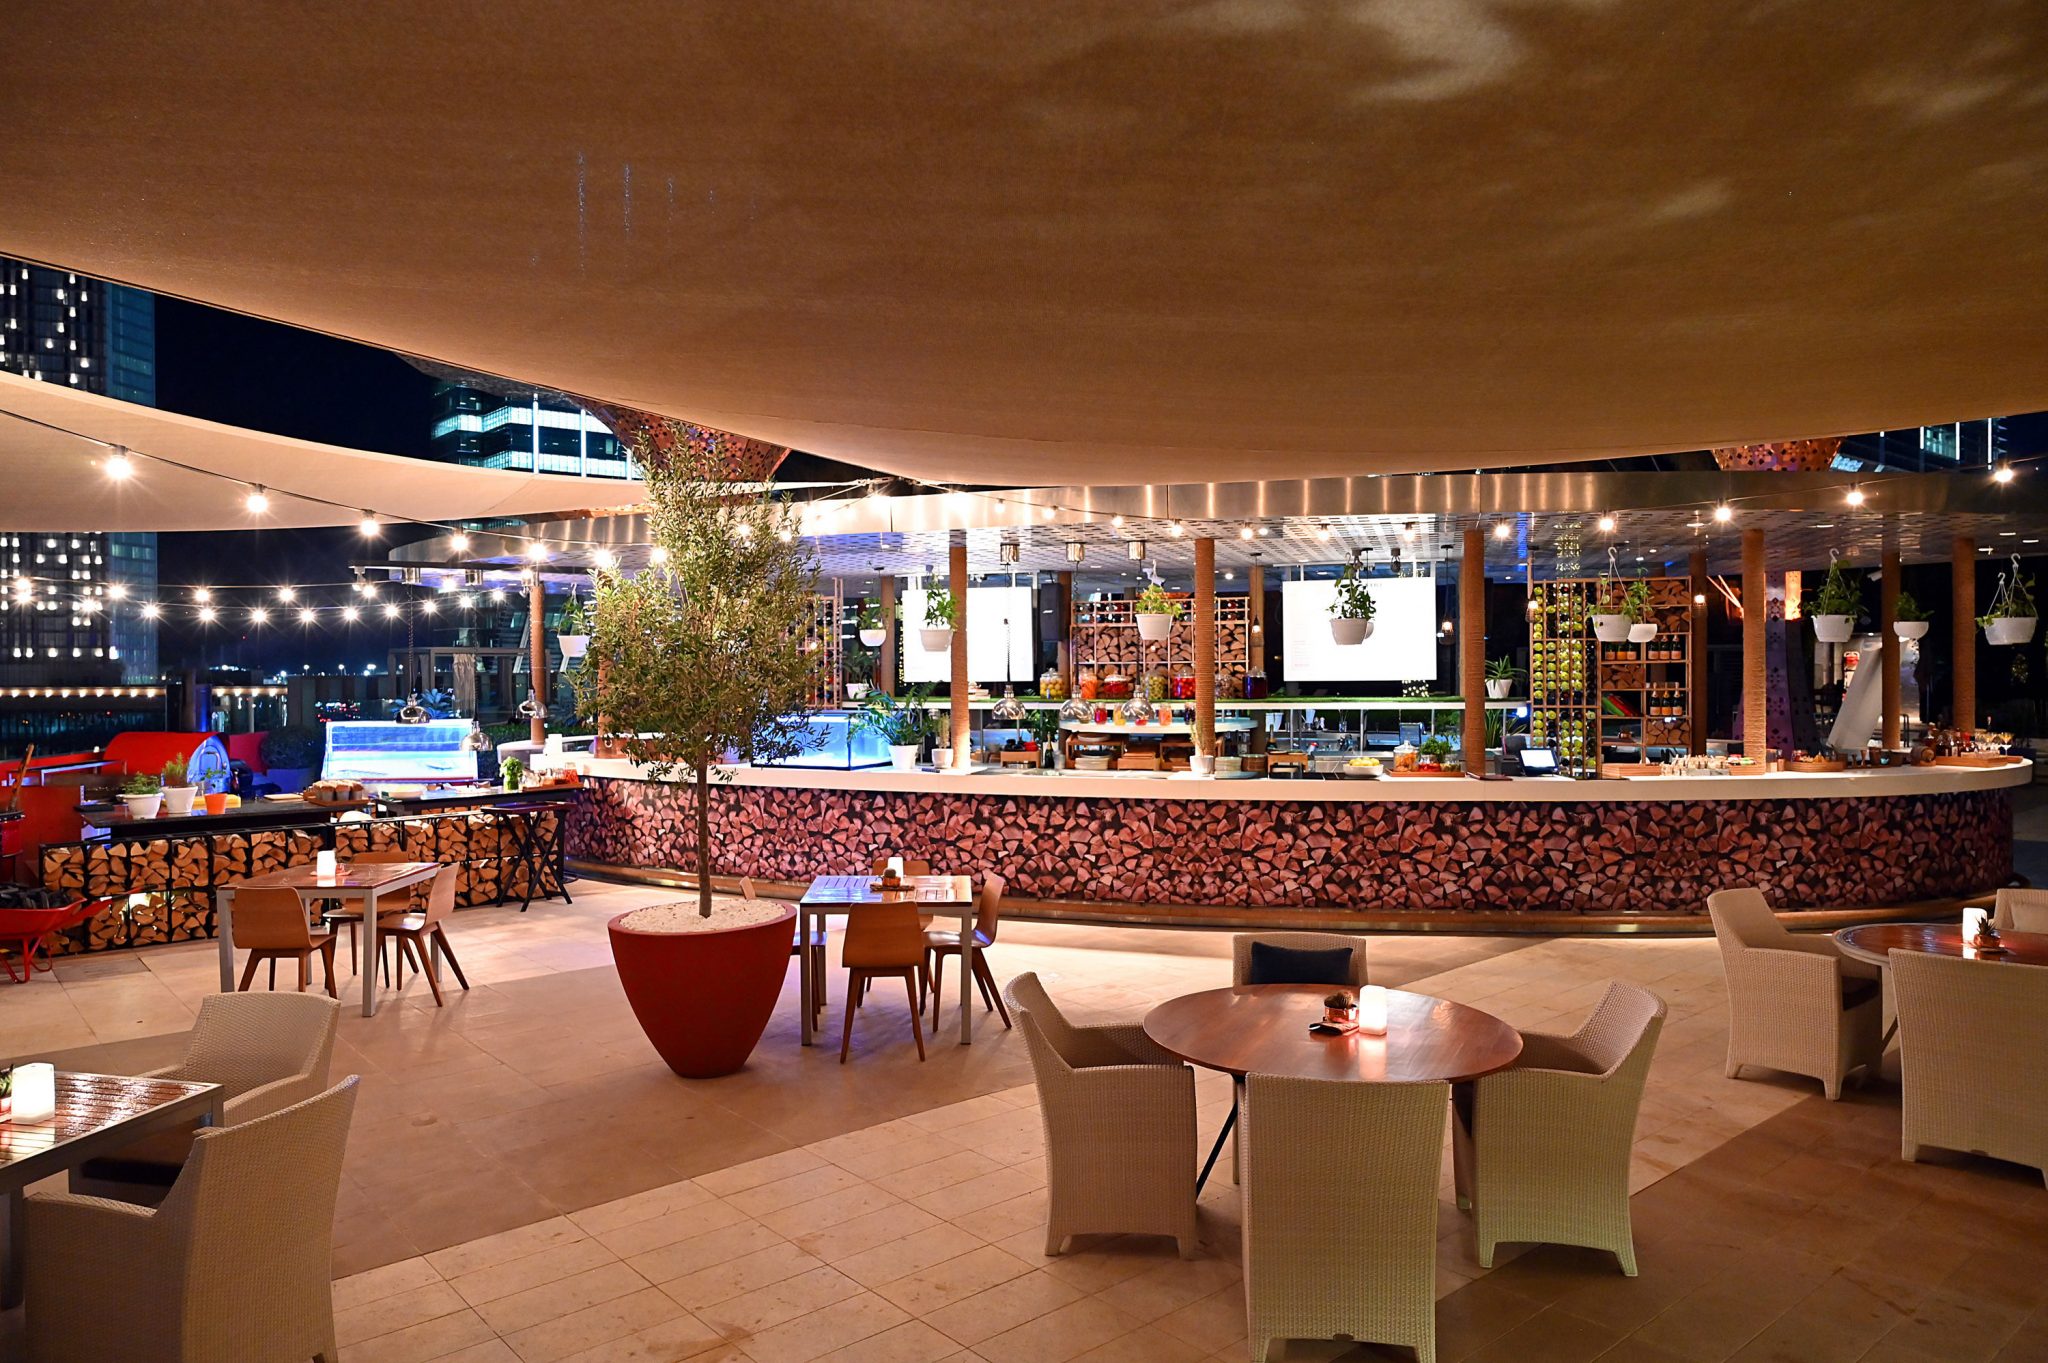 مطعم غلو بفندق روزوود أبوظبي ينظم أمسيات وود آند فاير 2020